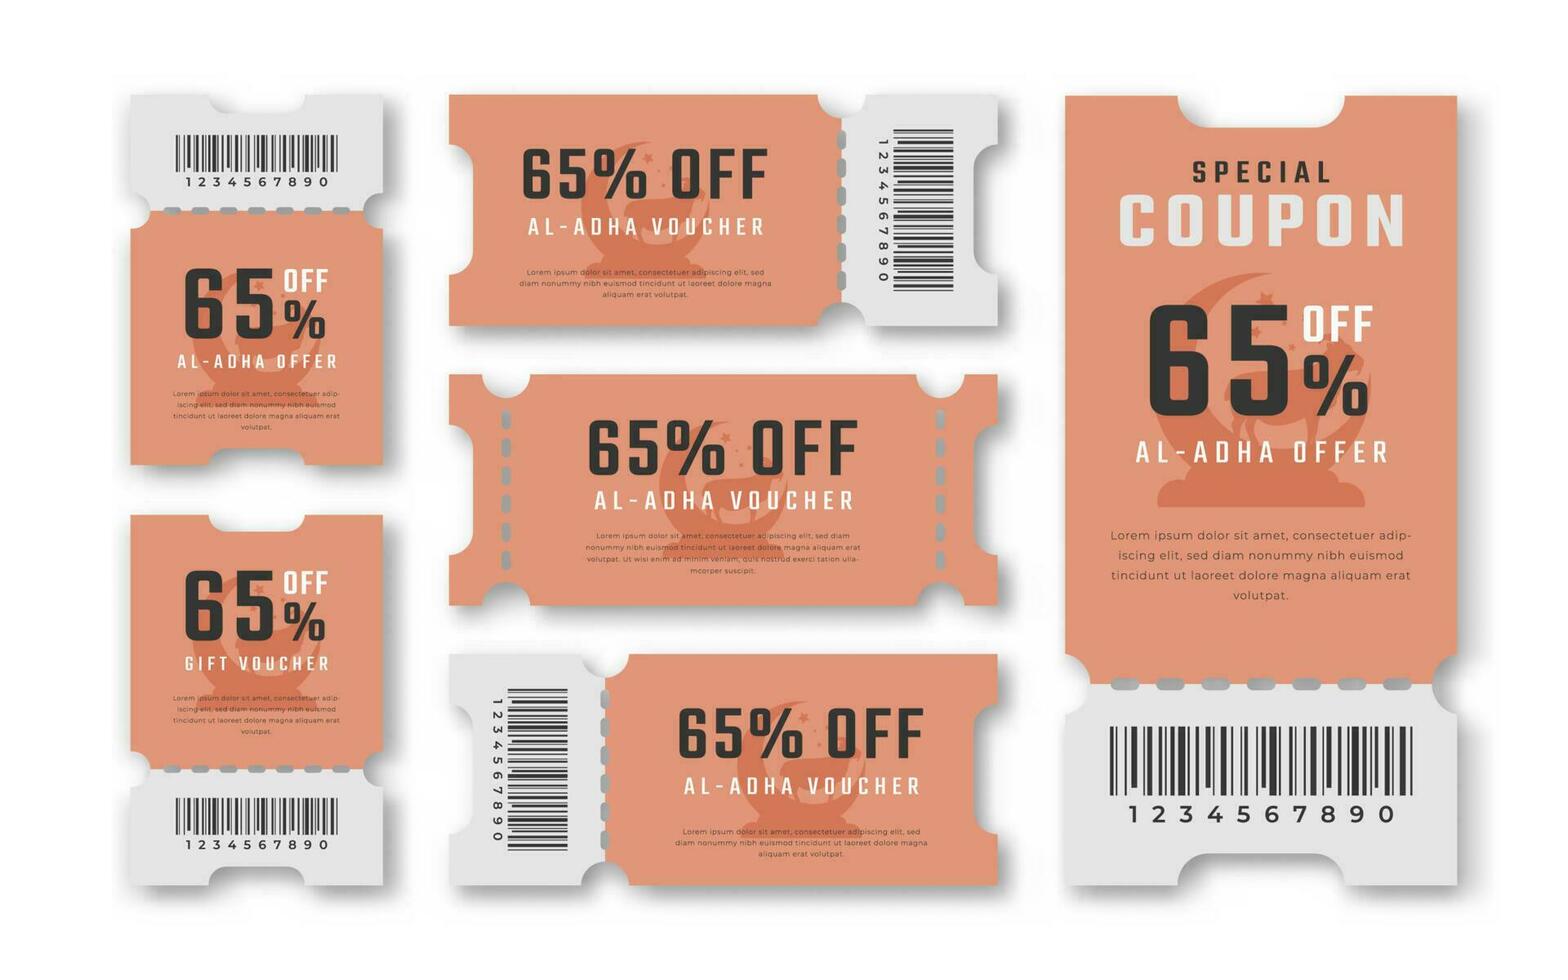 Al adha vente coupon remise bon 65 pour cent de pour promo code, achats, commercialisation et meilleur promo vente au détail prix vecteur illustration